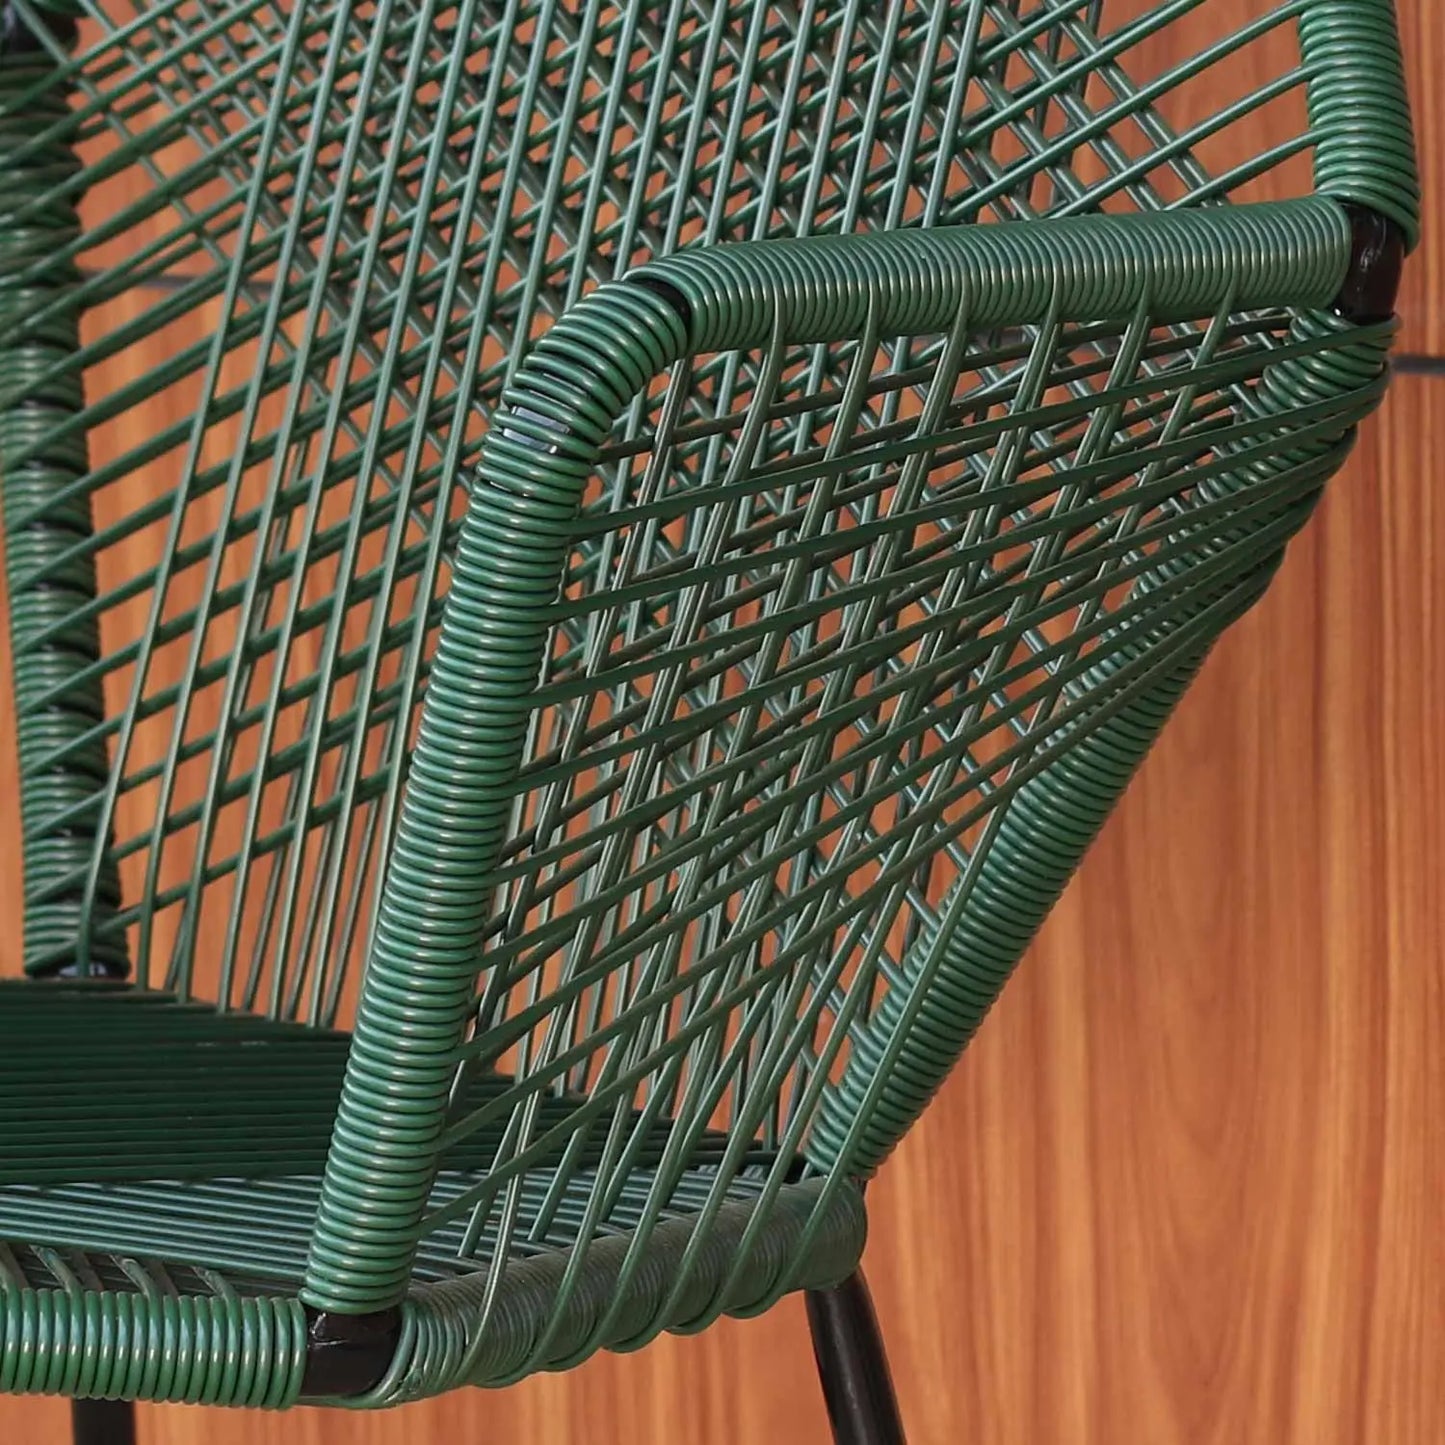 Homedock Cadeira Tropicália Verde Higor